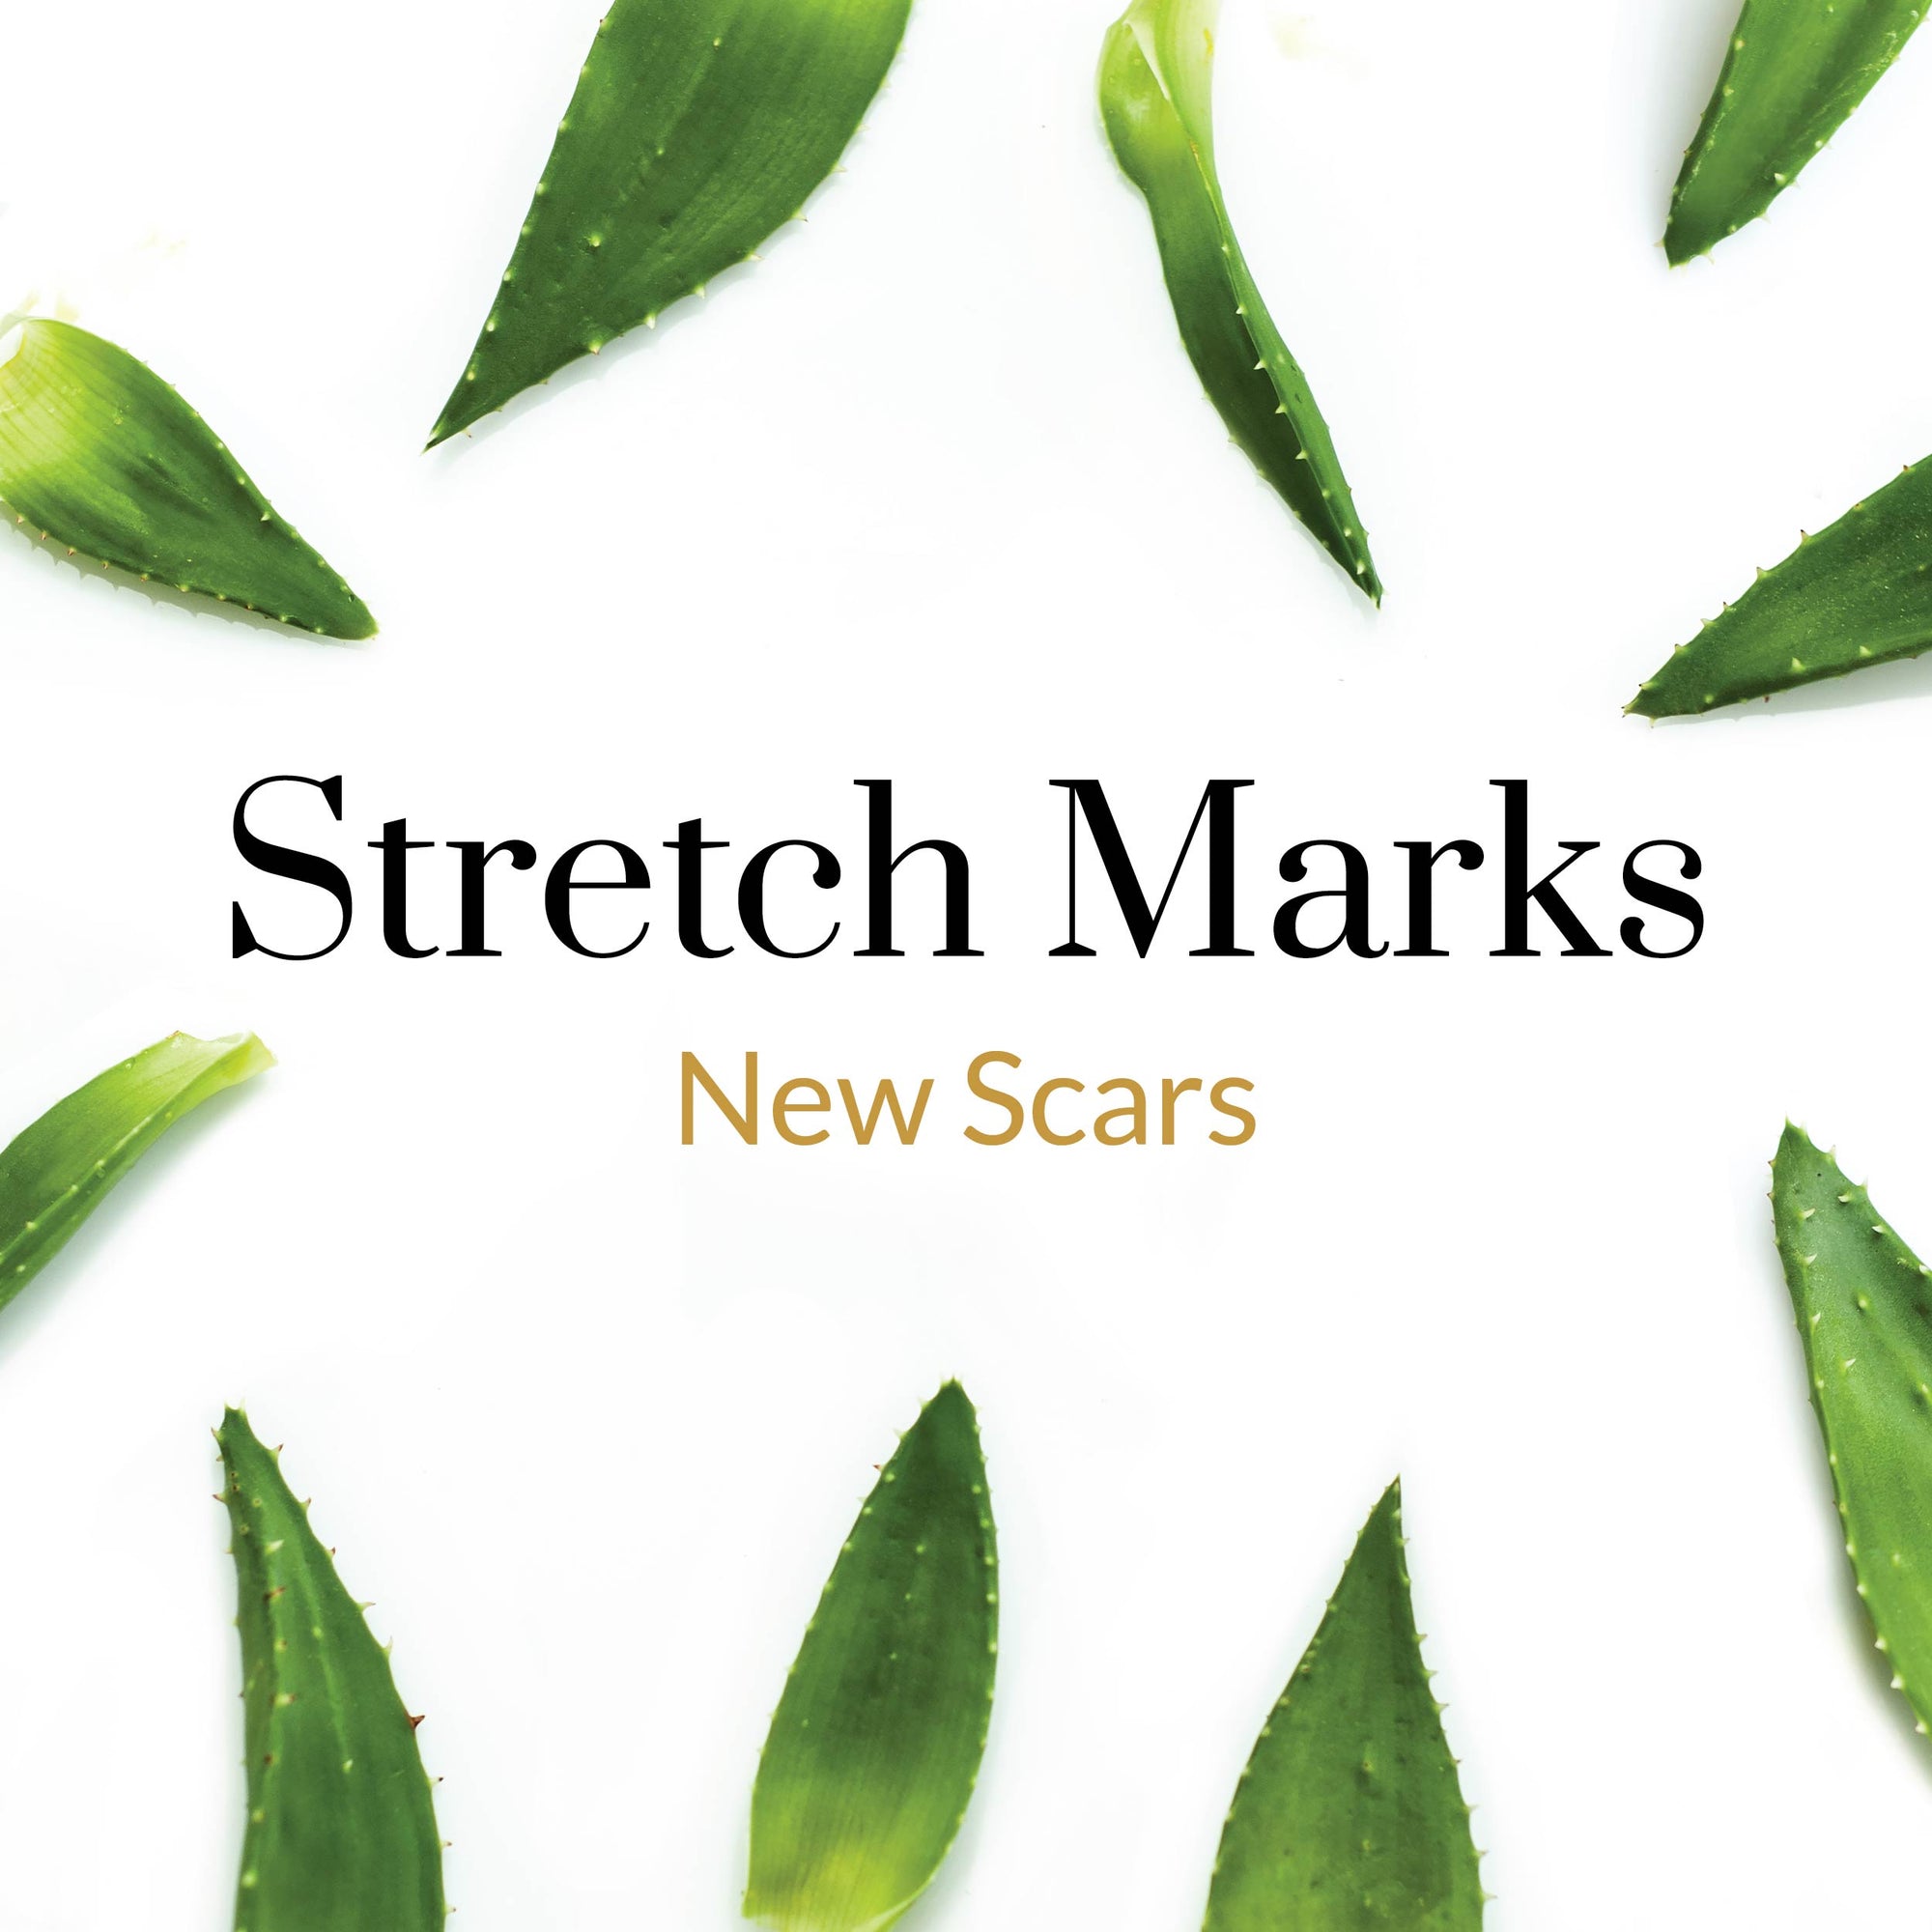 New Scars - Stretch Marks